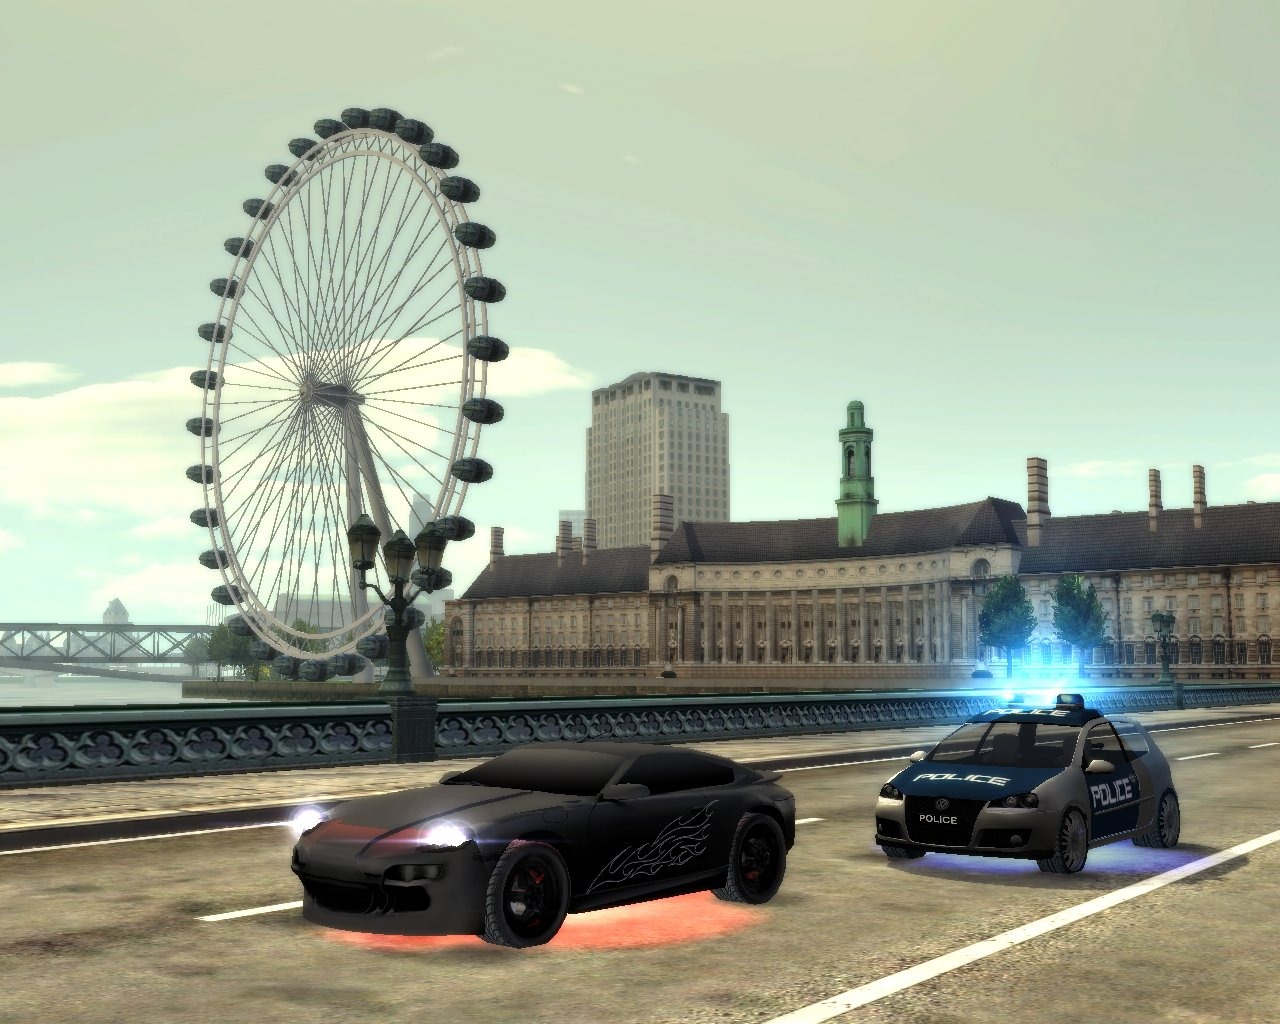 لعبة السيارات الرائعة جداا City Racer بحجم خرافي ميجا مضغوطة وعلي رابط سريع صروووخ